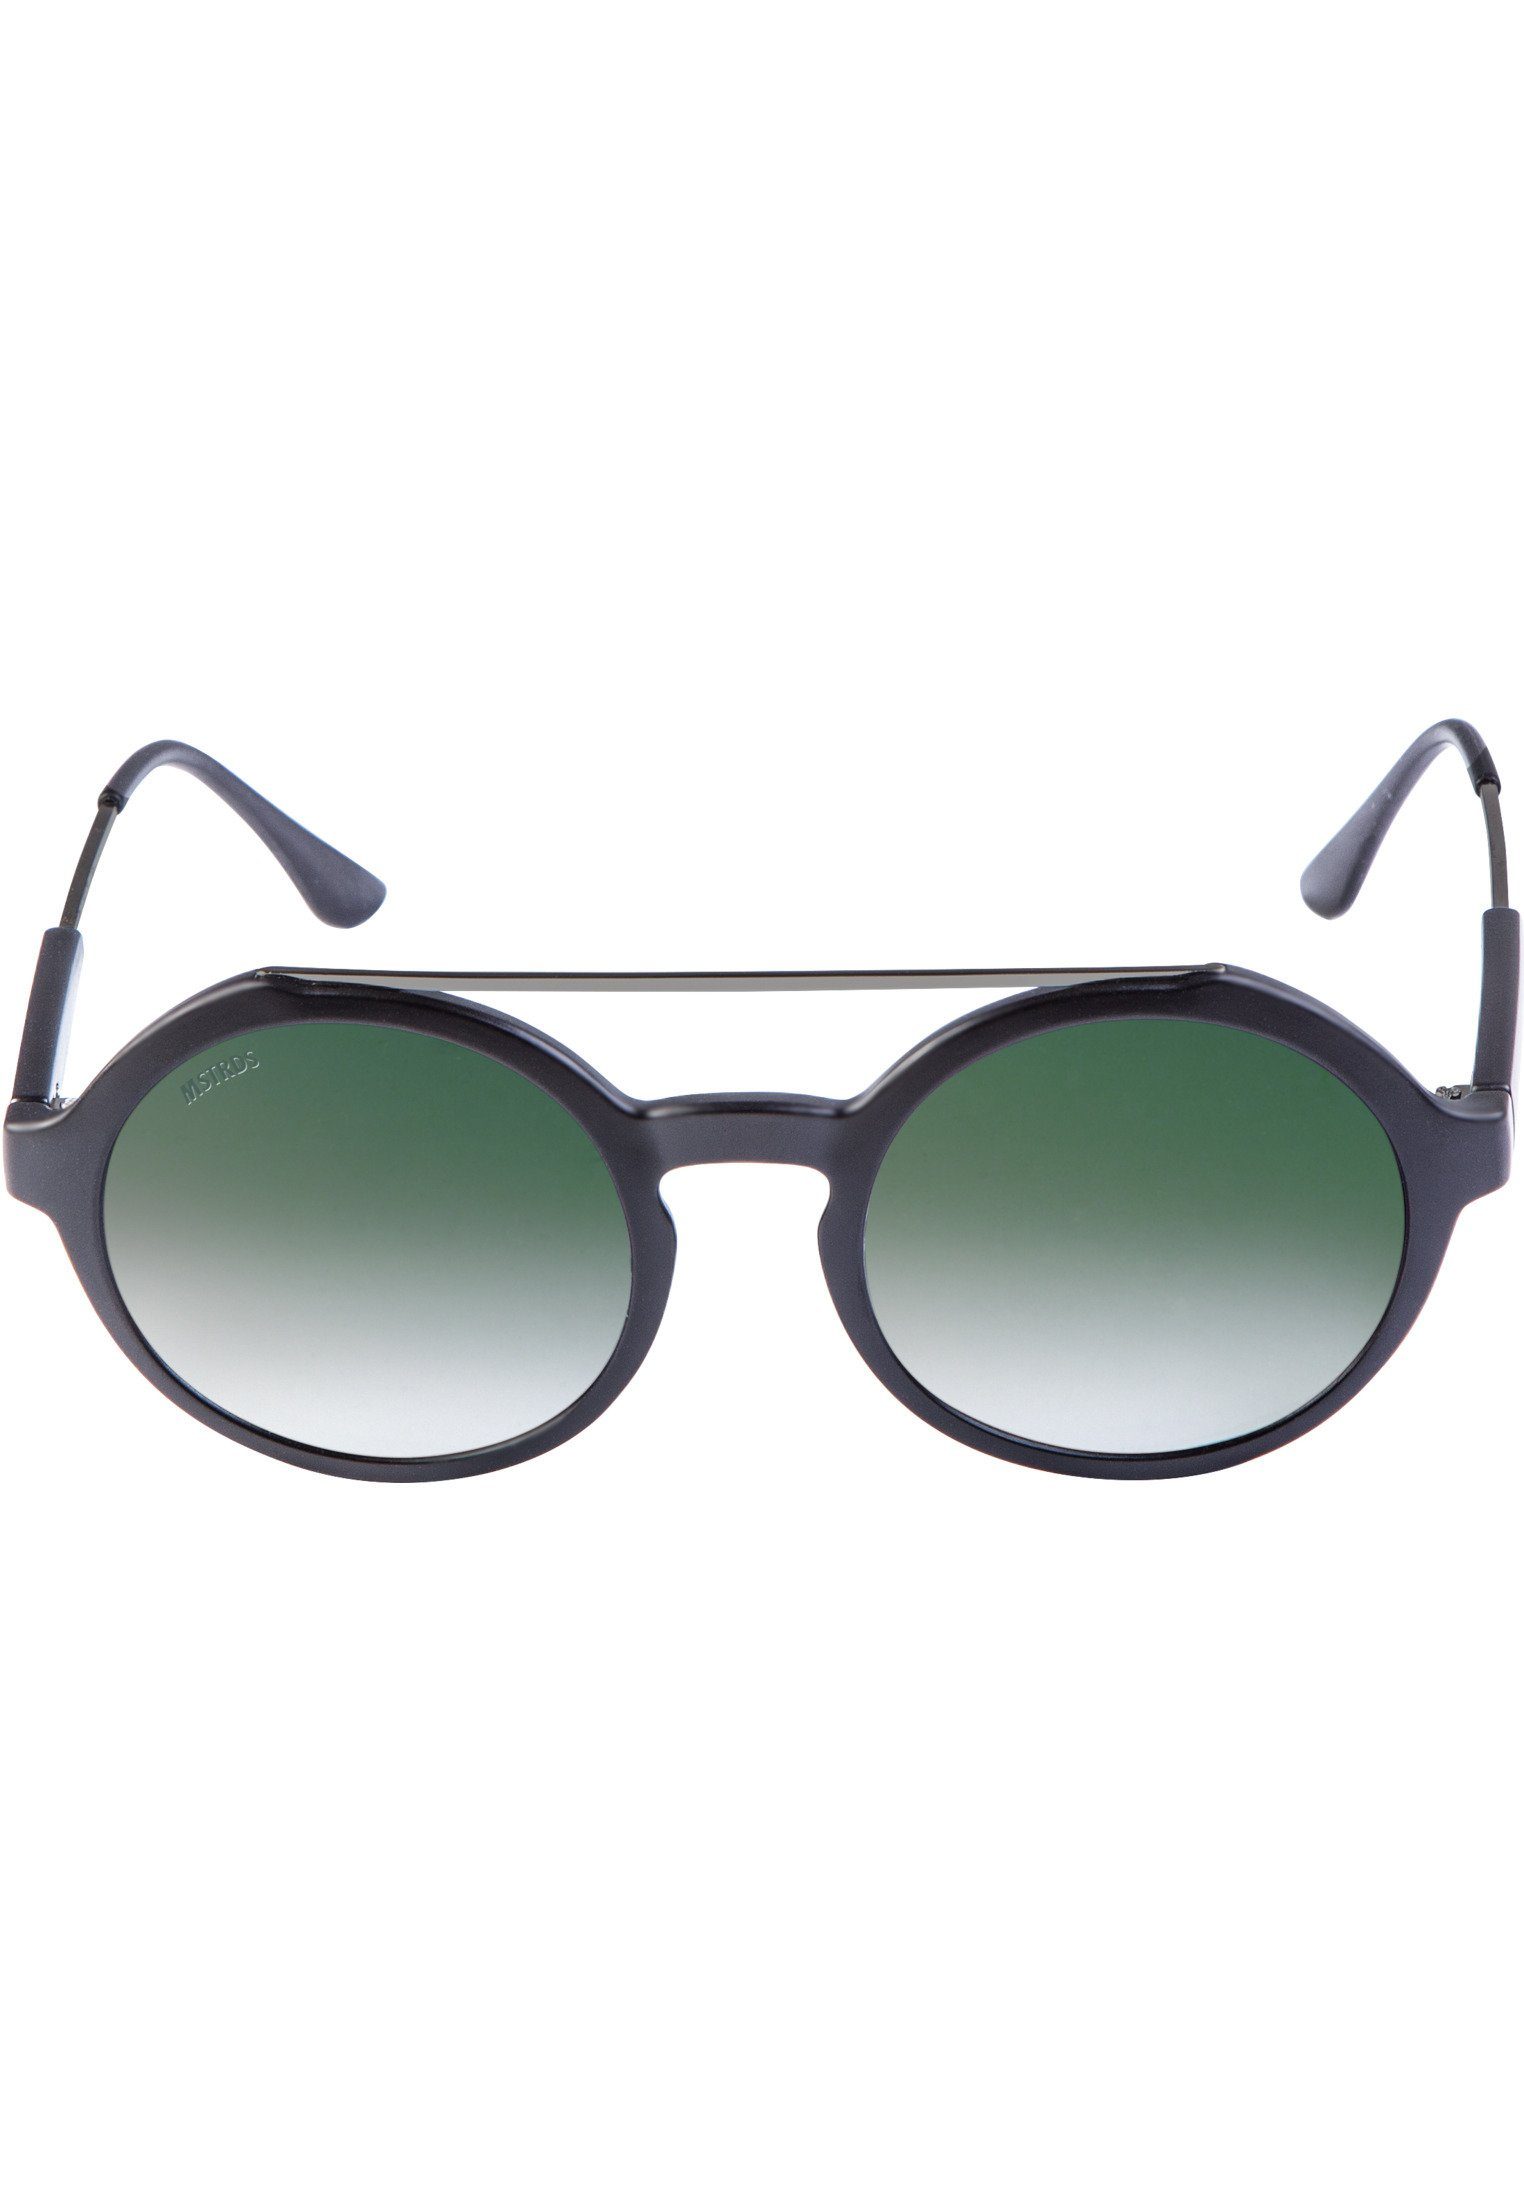 MSTRDS Sonnenbrille Accessoires Sunglasses Retro blk/grn Space